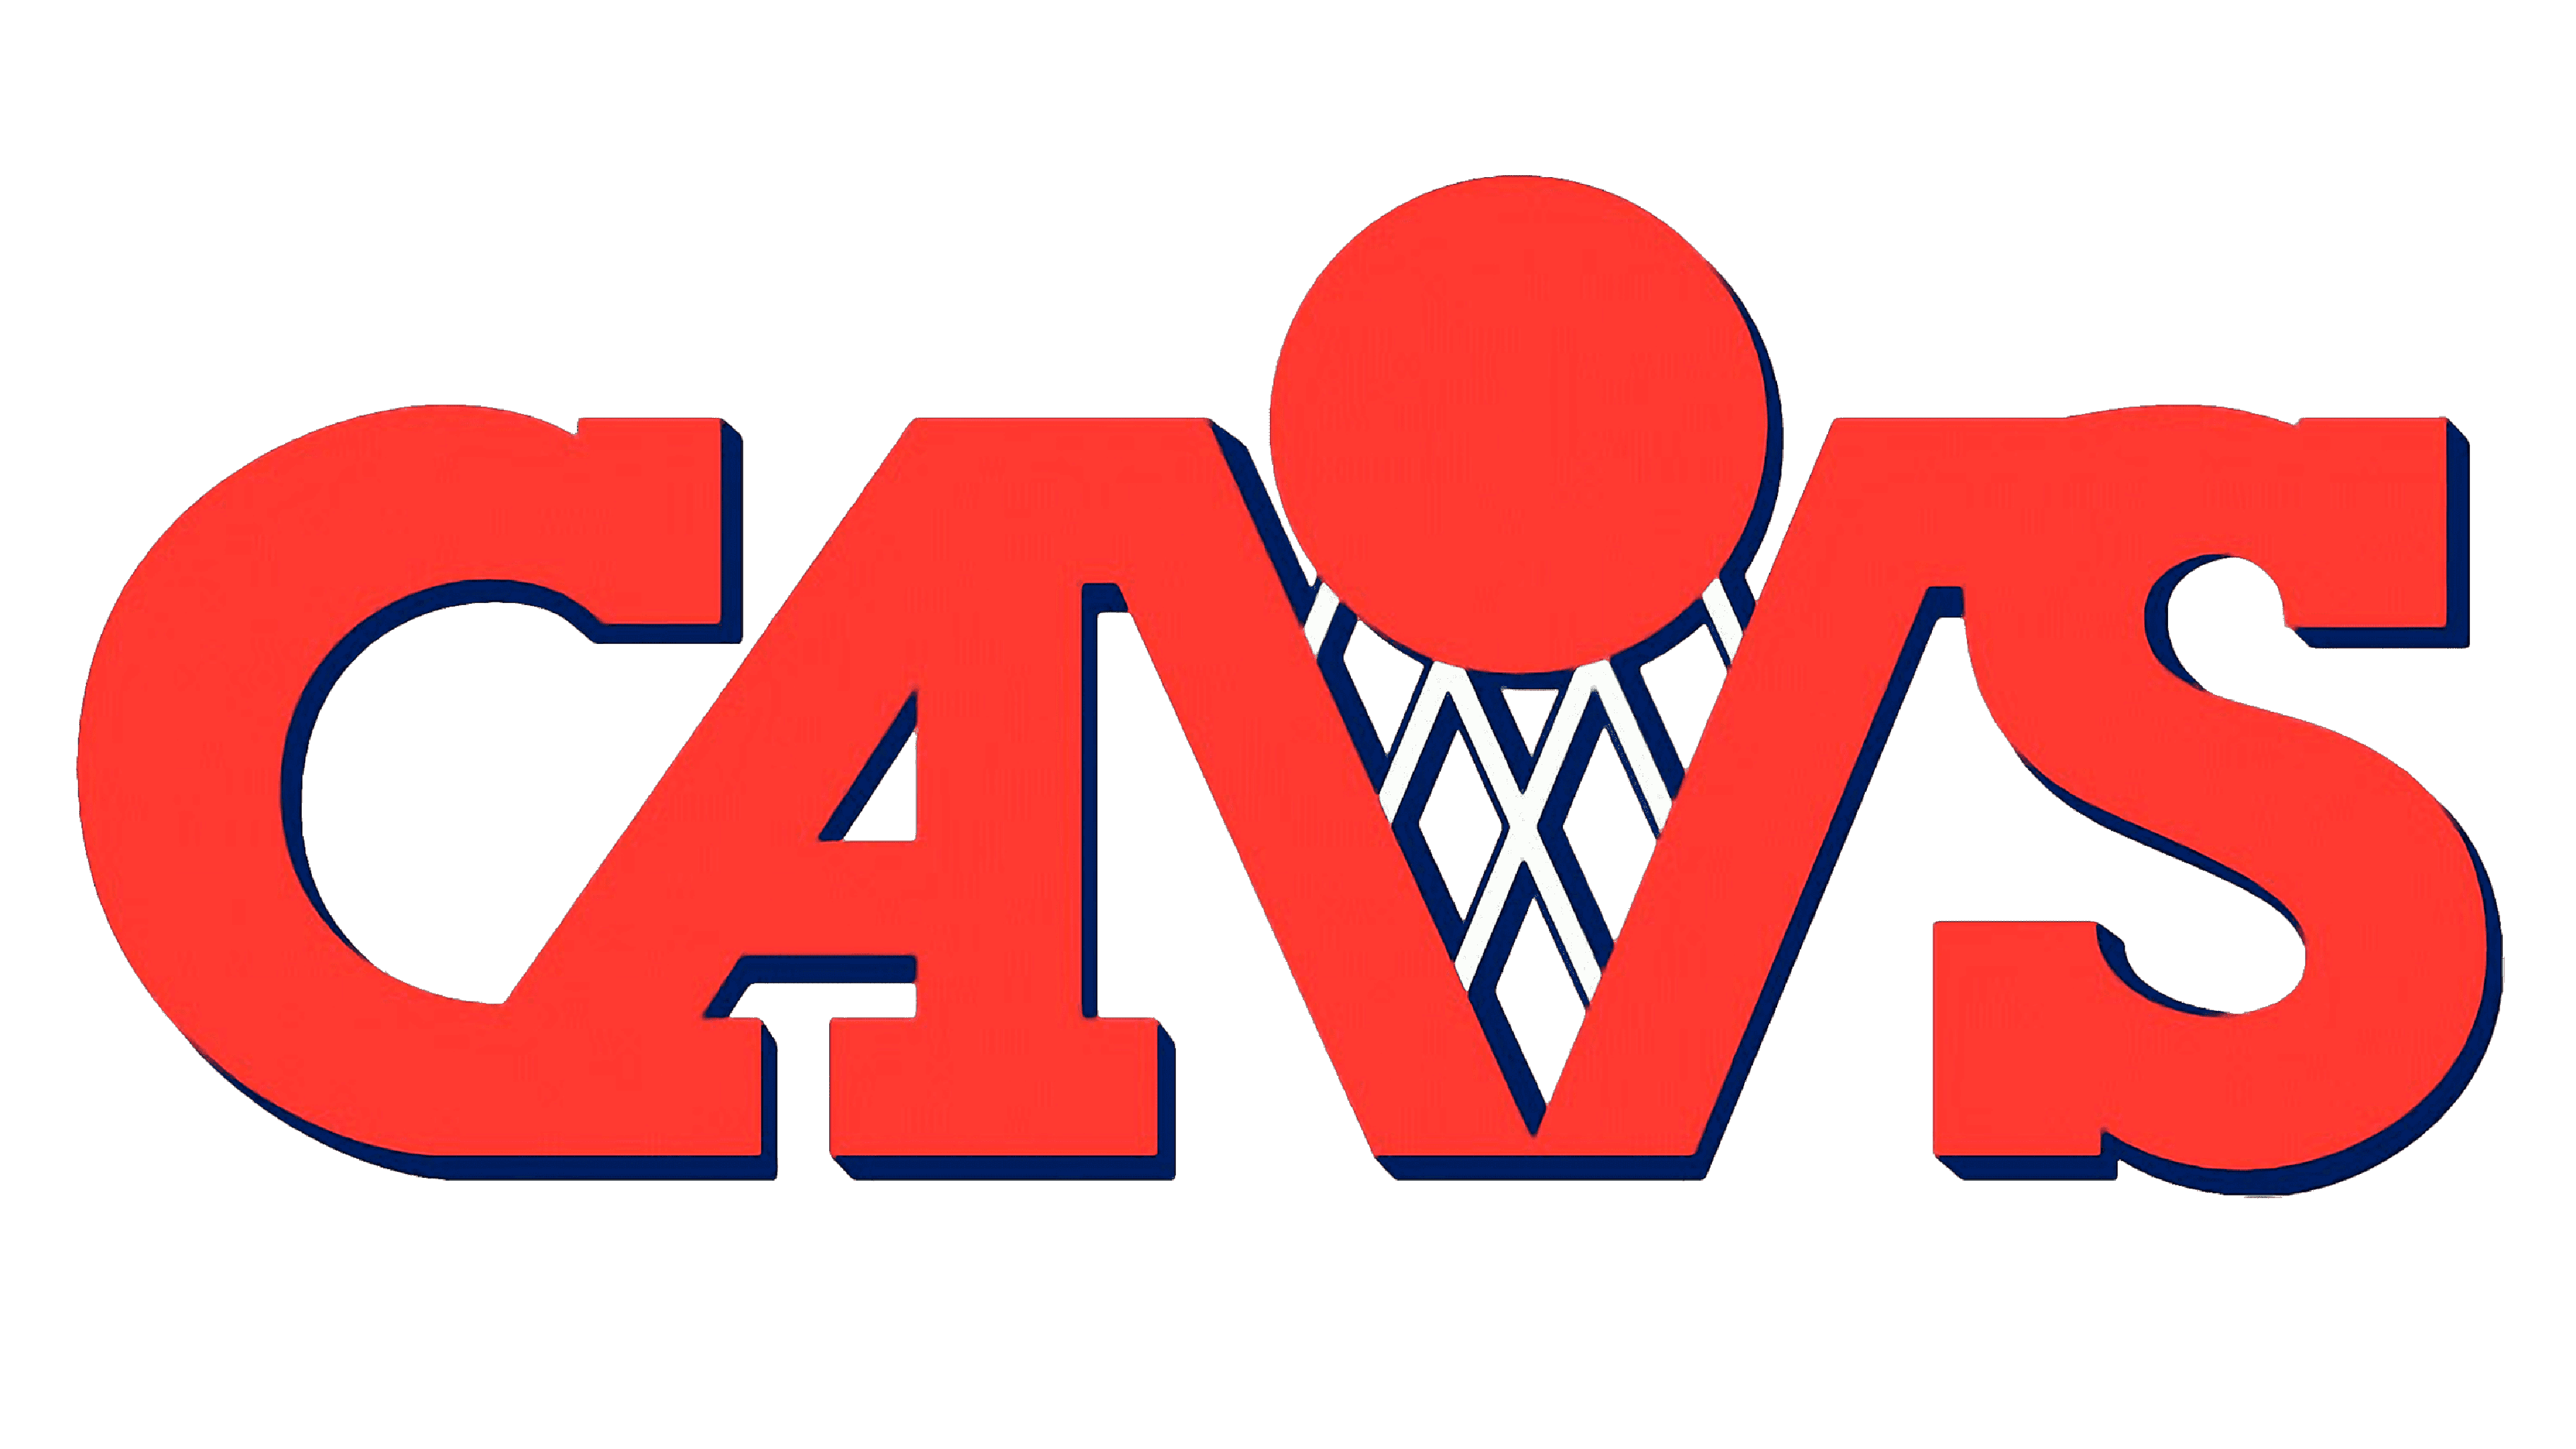 NBA Logos  Cavs logo, Cavs, Cleveland cavs